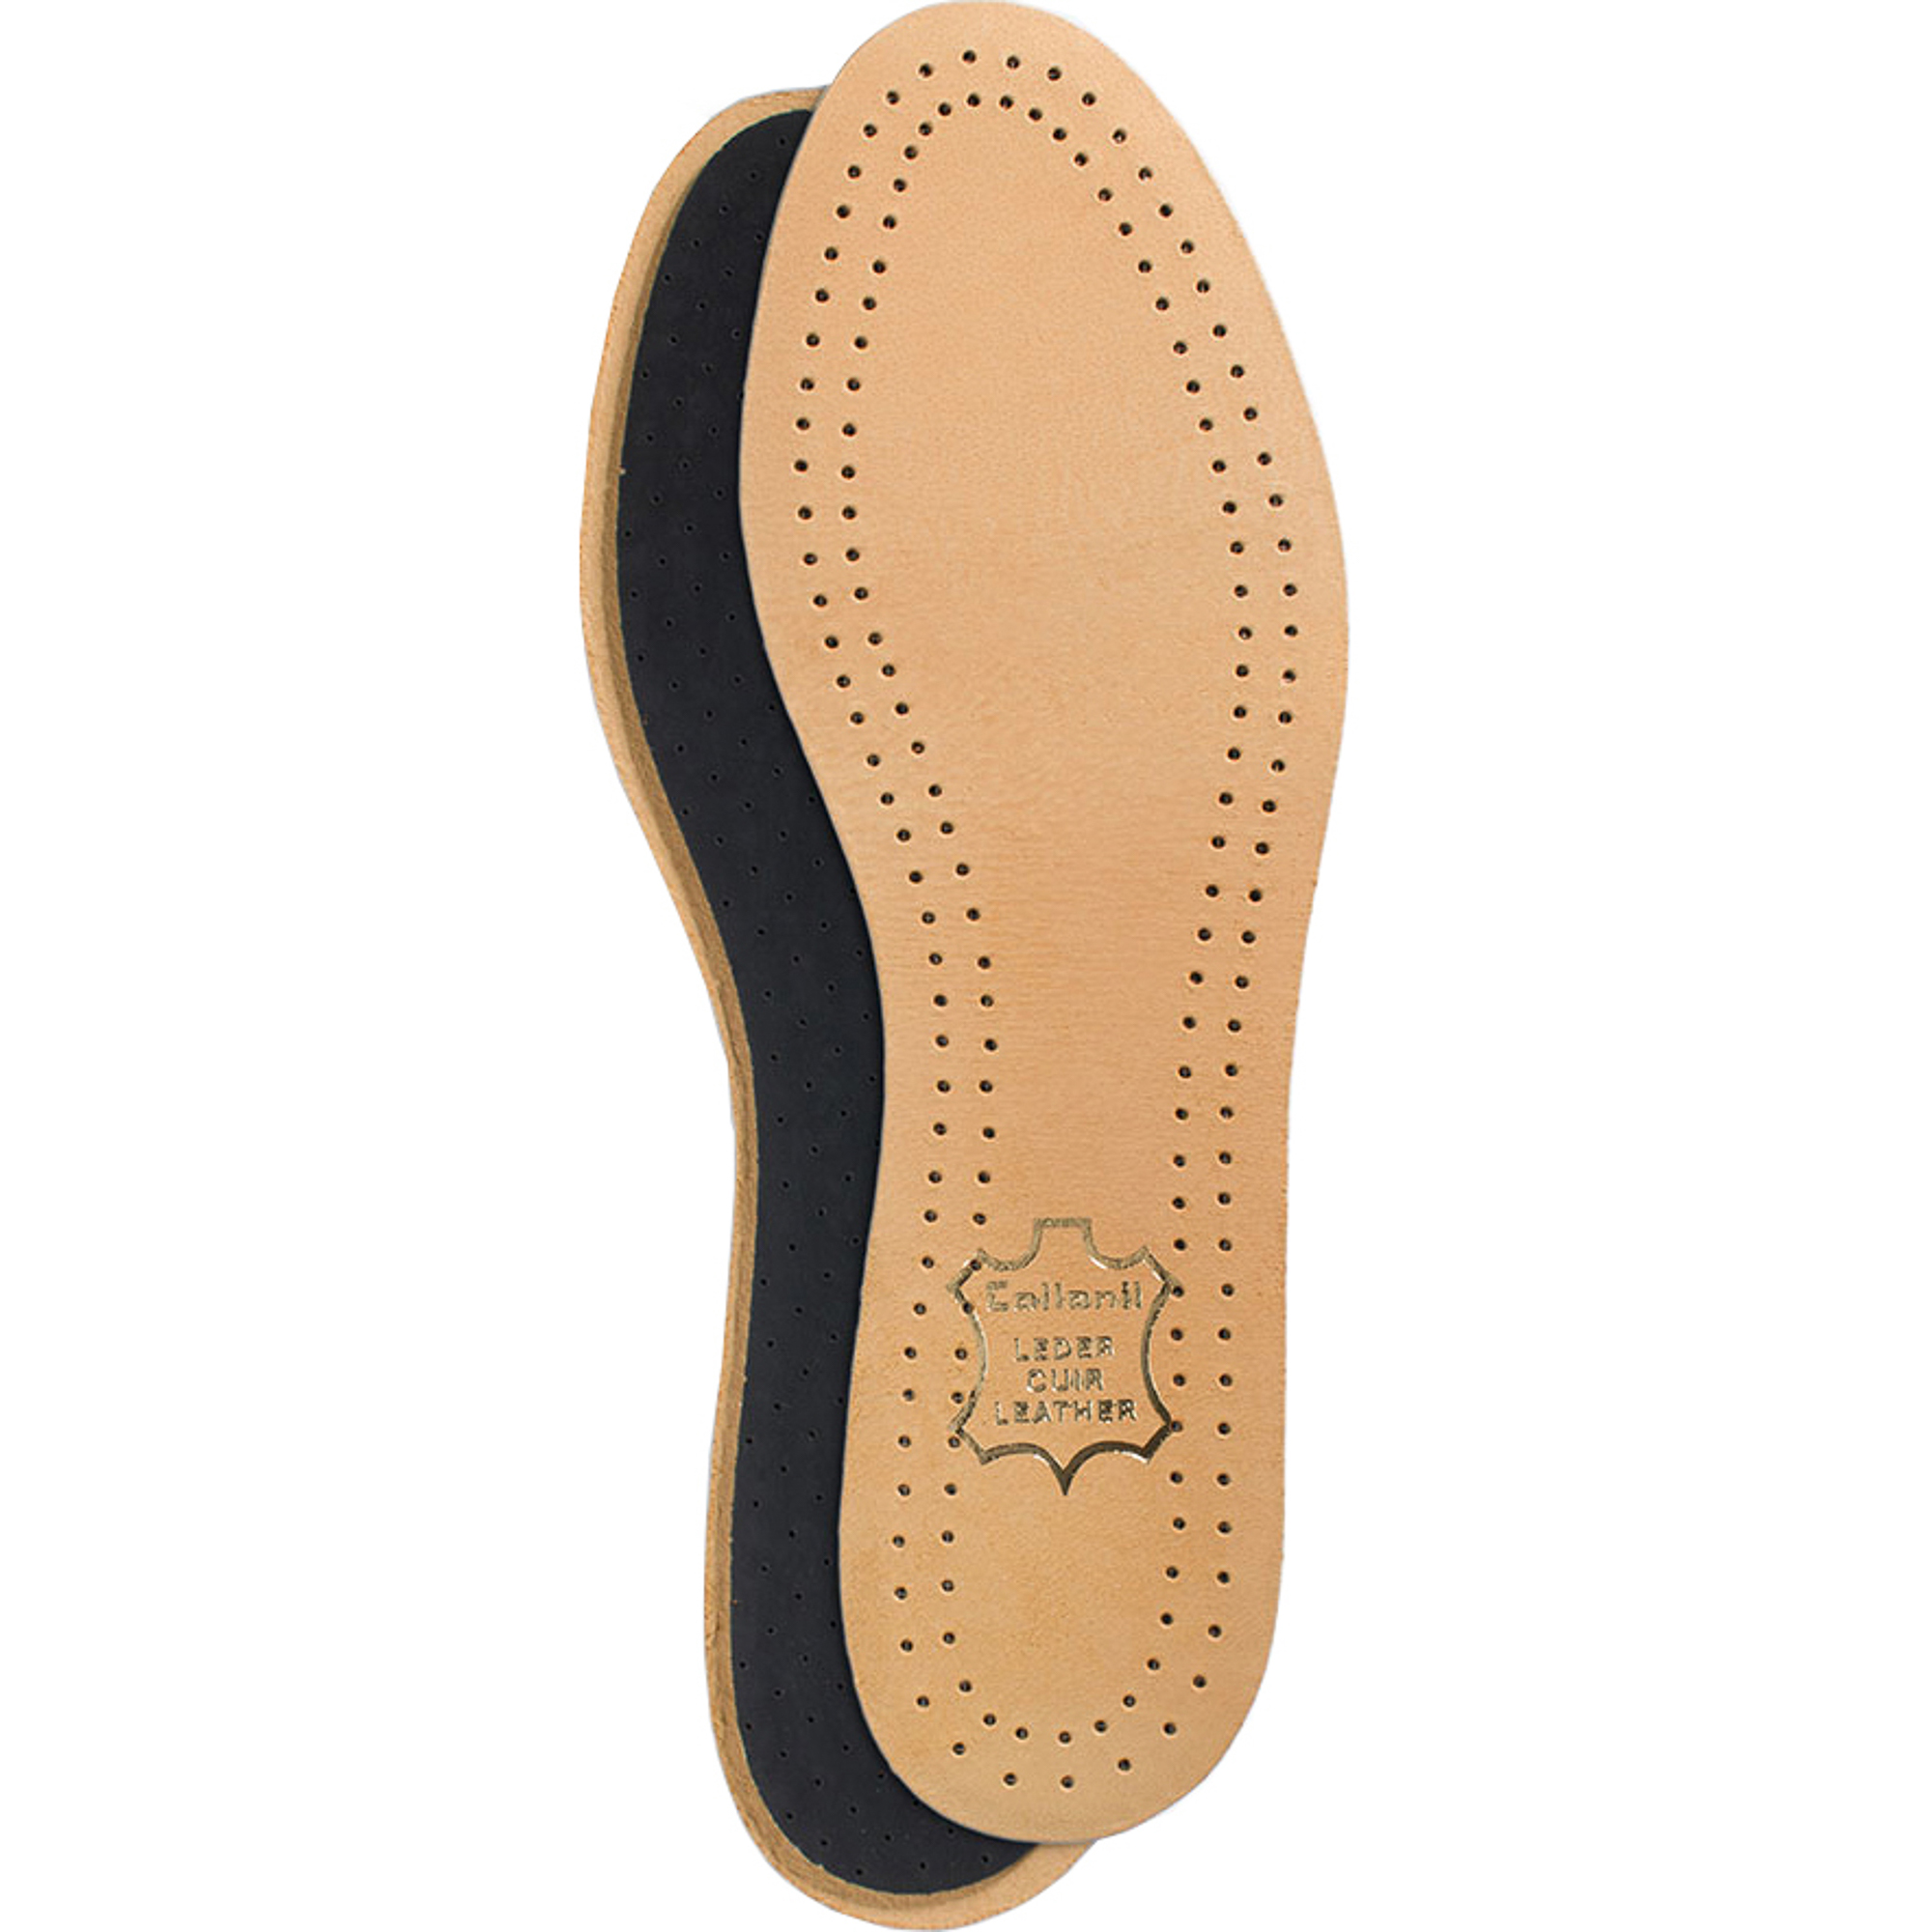 Стельки для обуви Collonil Luxor размер 43 стельки для обуви scholl gelactiv sport для женщин